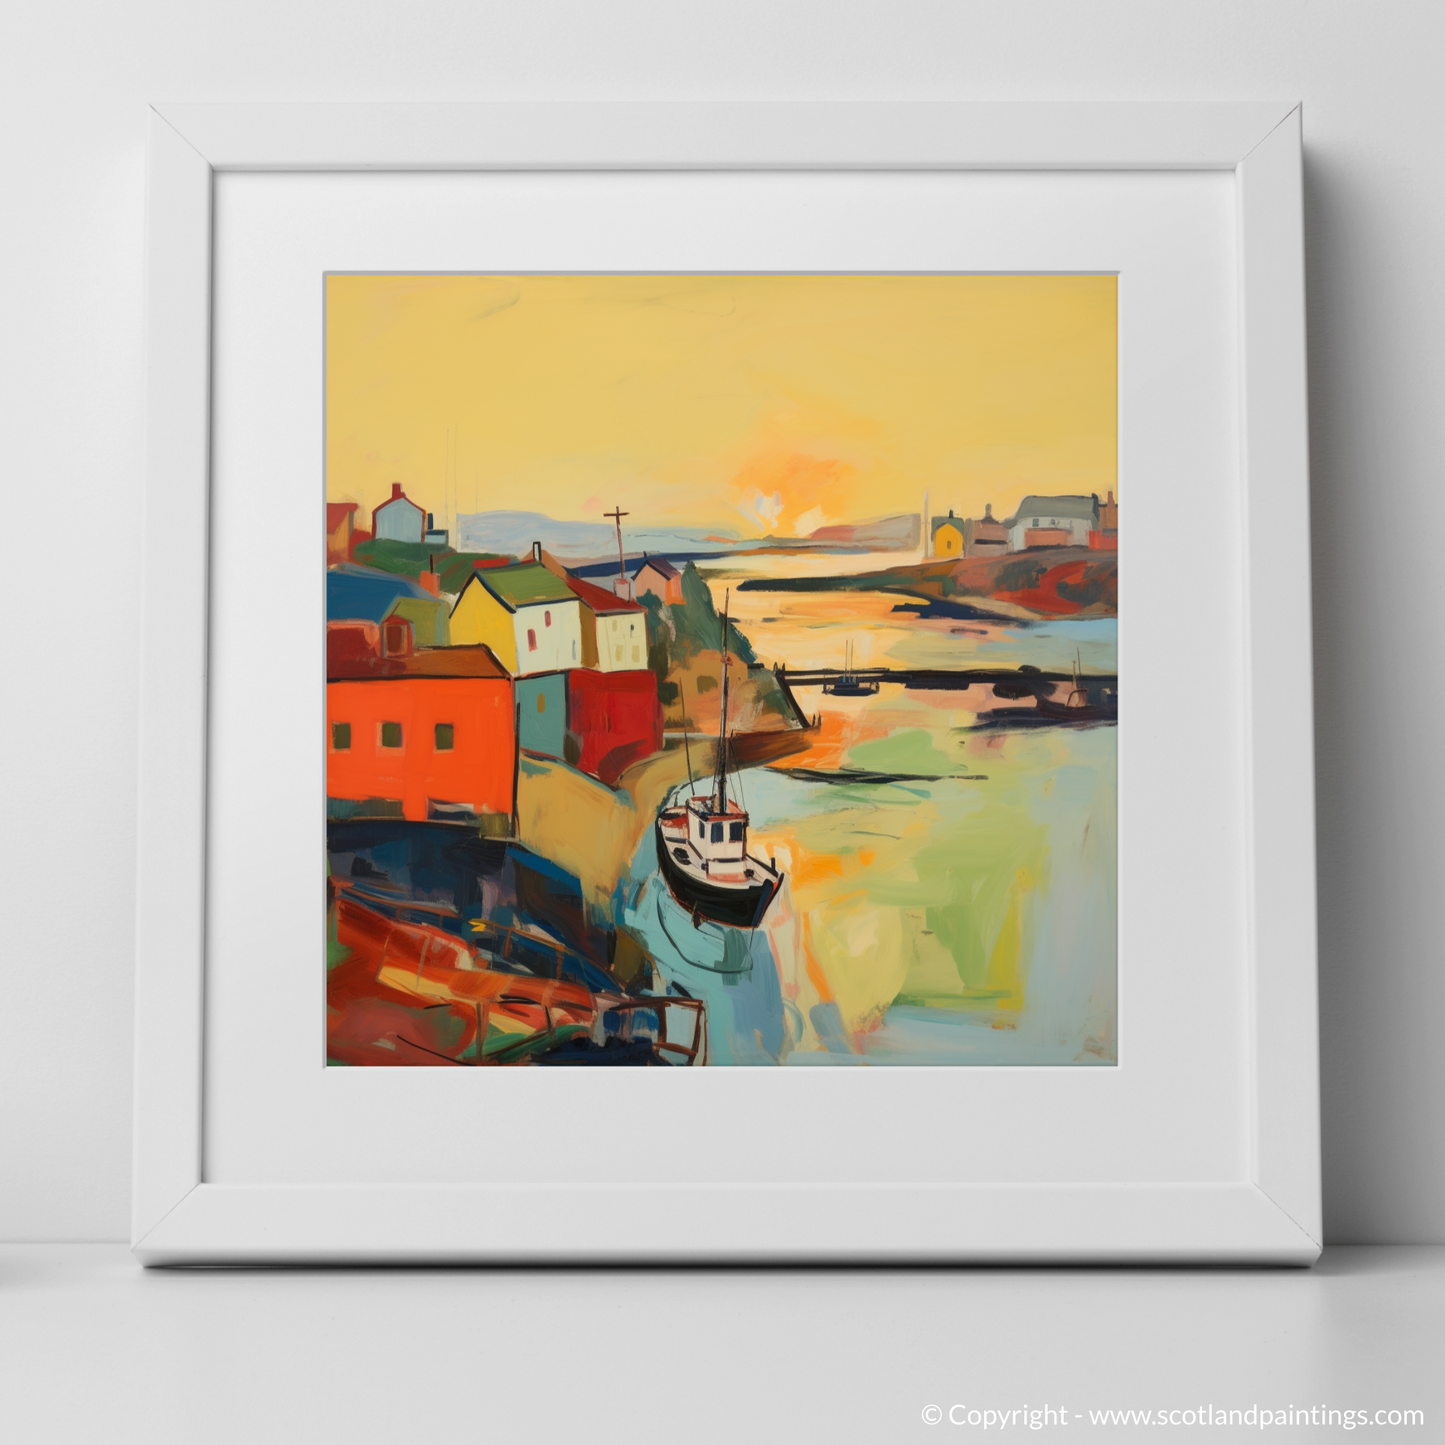 Golden Hour at Macduff Harbour: An Abstract Interpretation